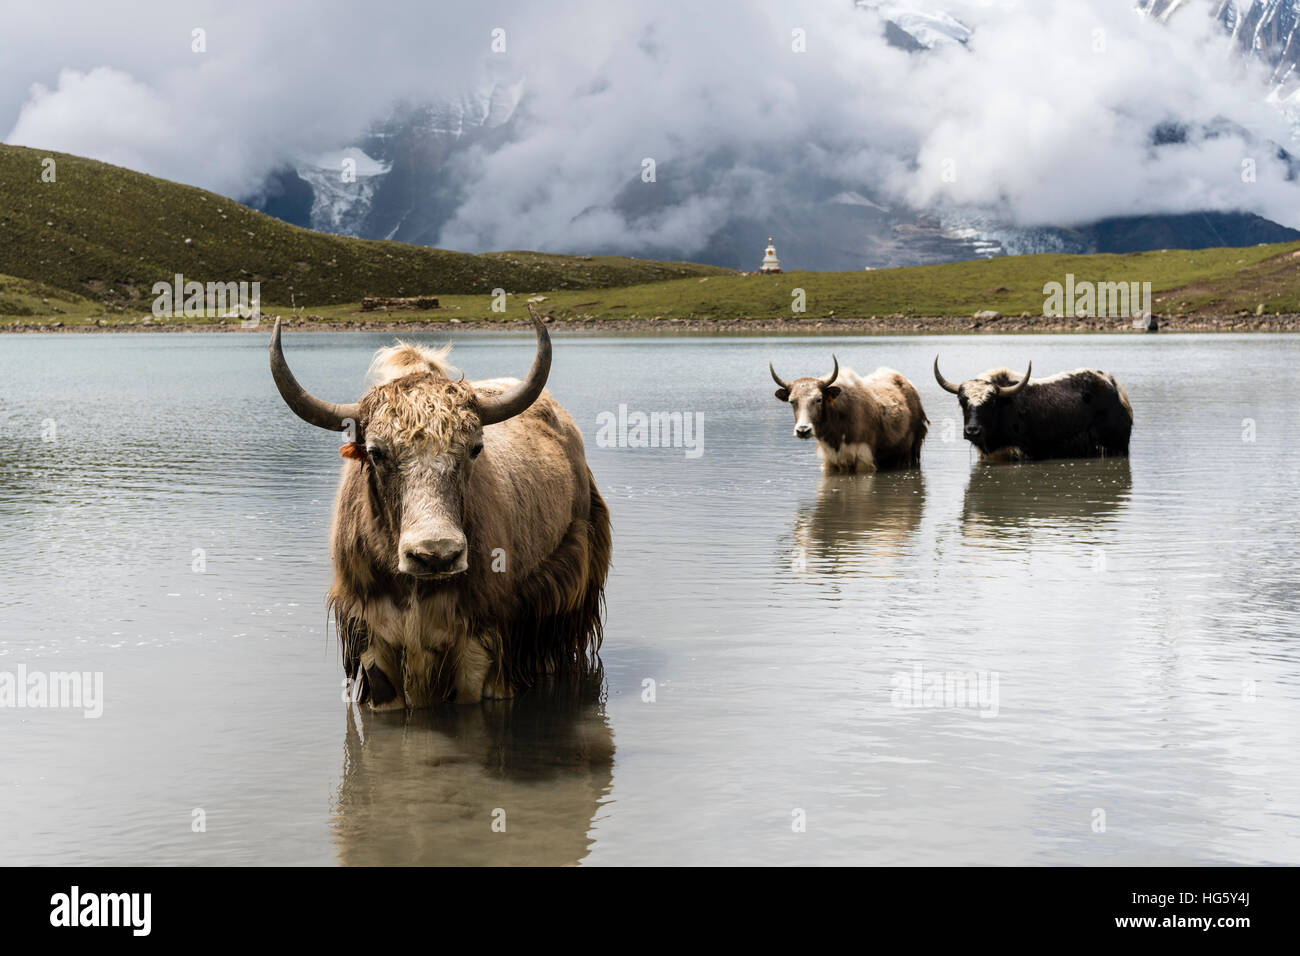 Los yaks (Bos mutus) de pie en el agua, el hielo del lago, Braga, distrito de Manang, Nepal Foto de stock